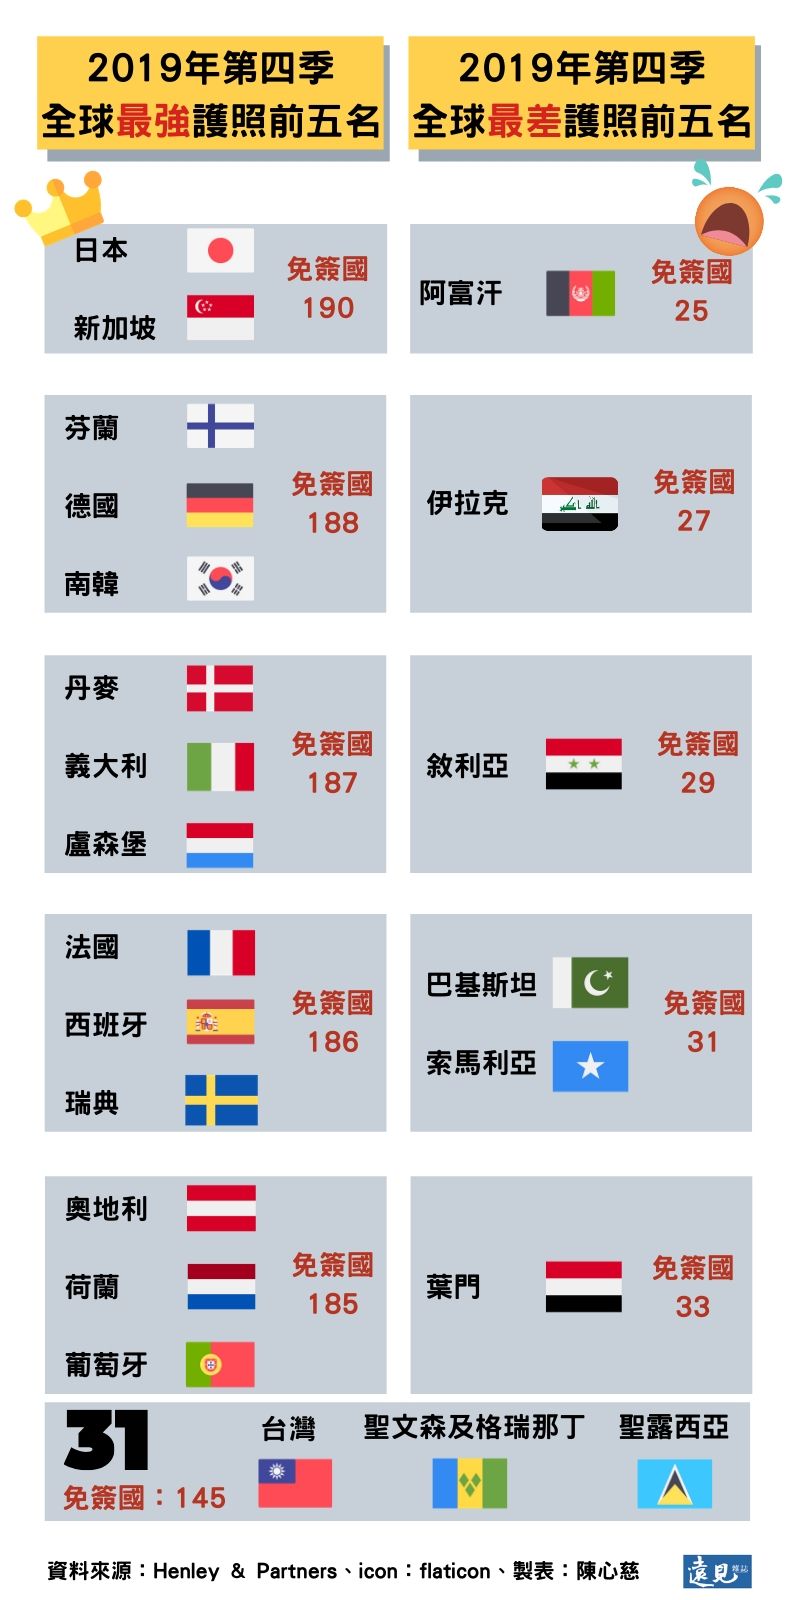 日本護照被認證 全世界最好用 為何77 日本人不想要 經濟日報 遠見雜誌